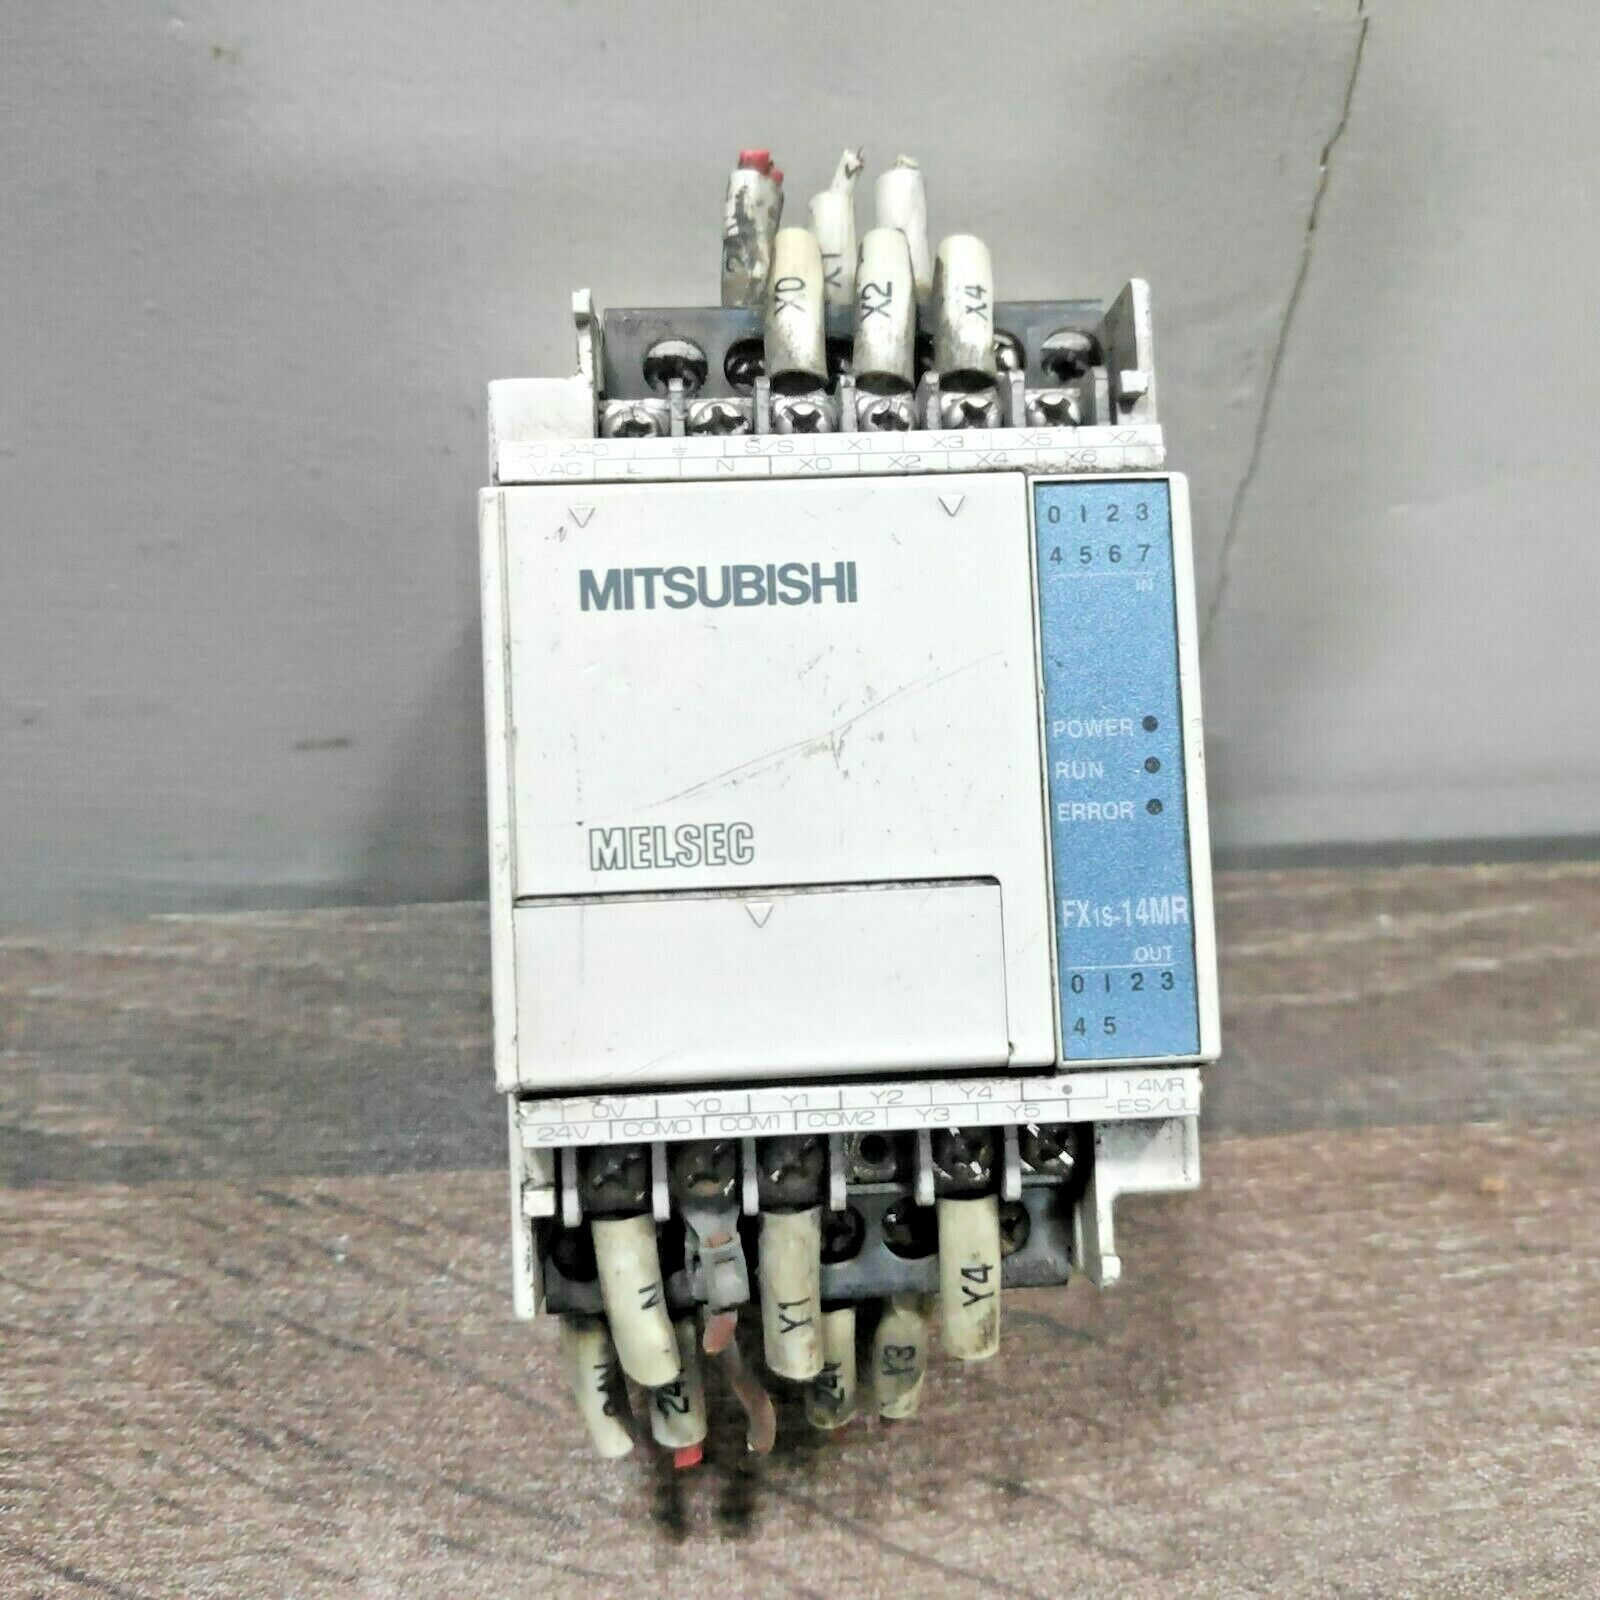 MITSUBISHI FX1S-14MR-ES/UL MELSEC PLC CONTROLLER